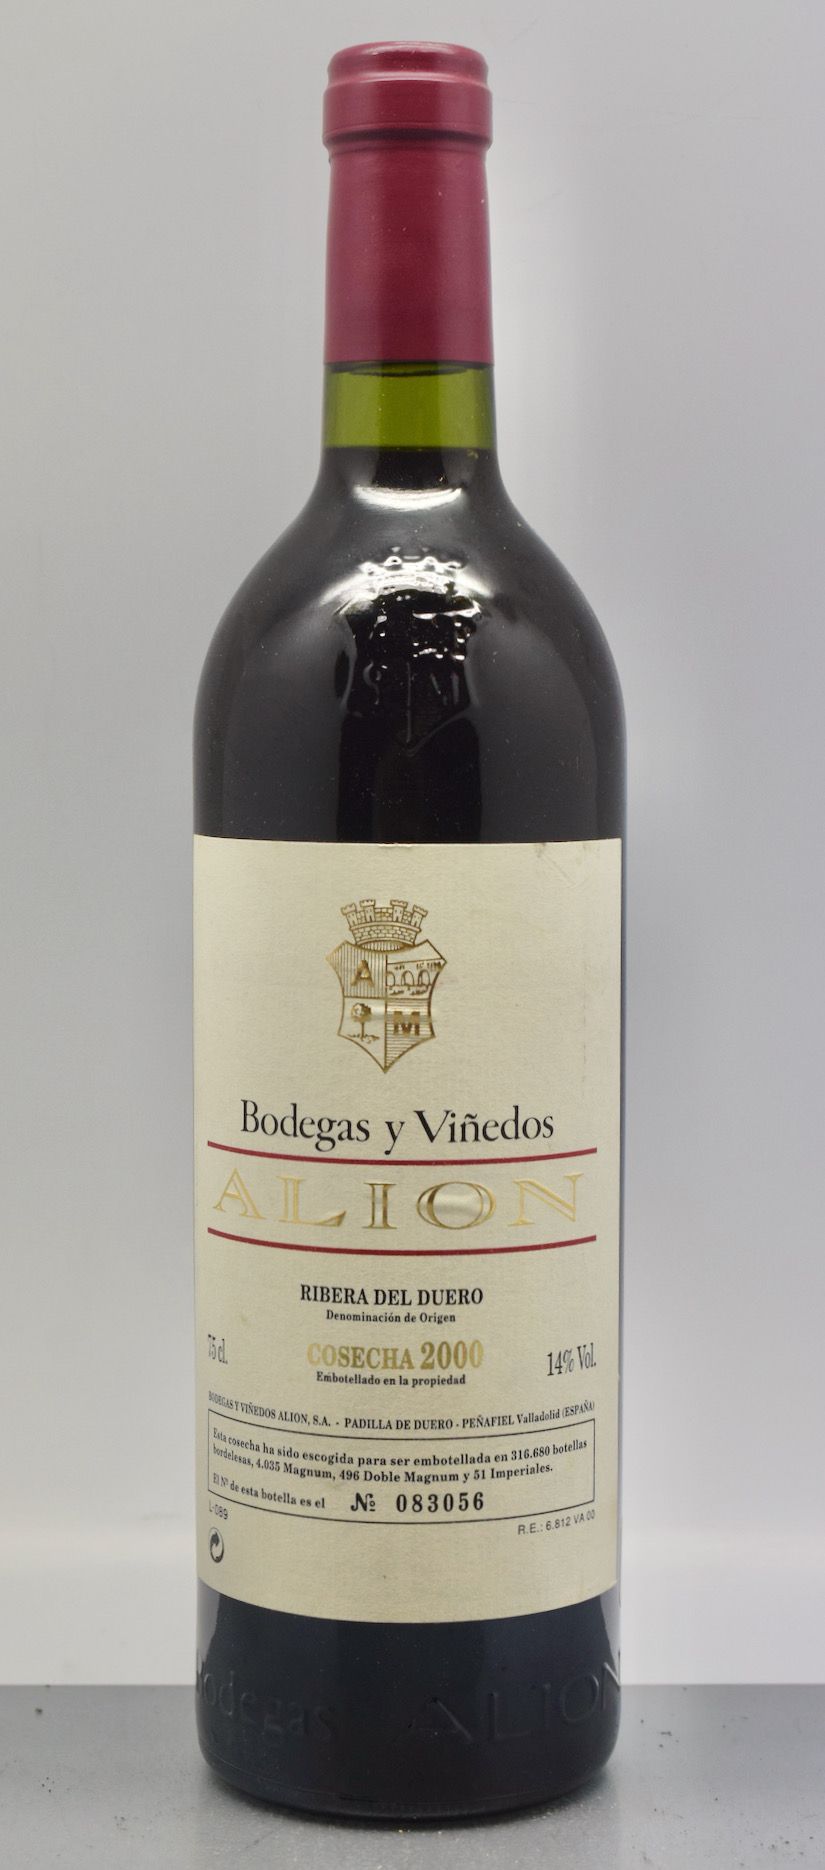 Null 1 bottle RIBERA DEL DUERO "Alion" Bodegas y Viñedos 2000